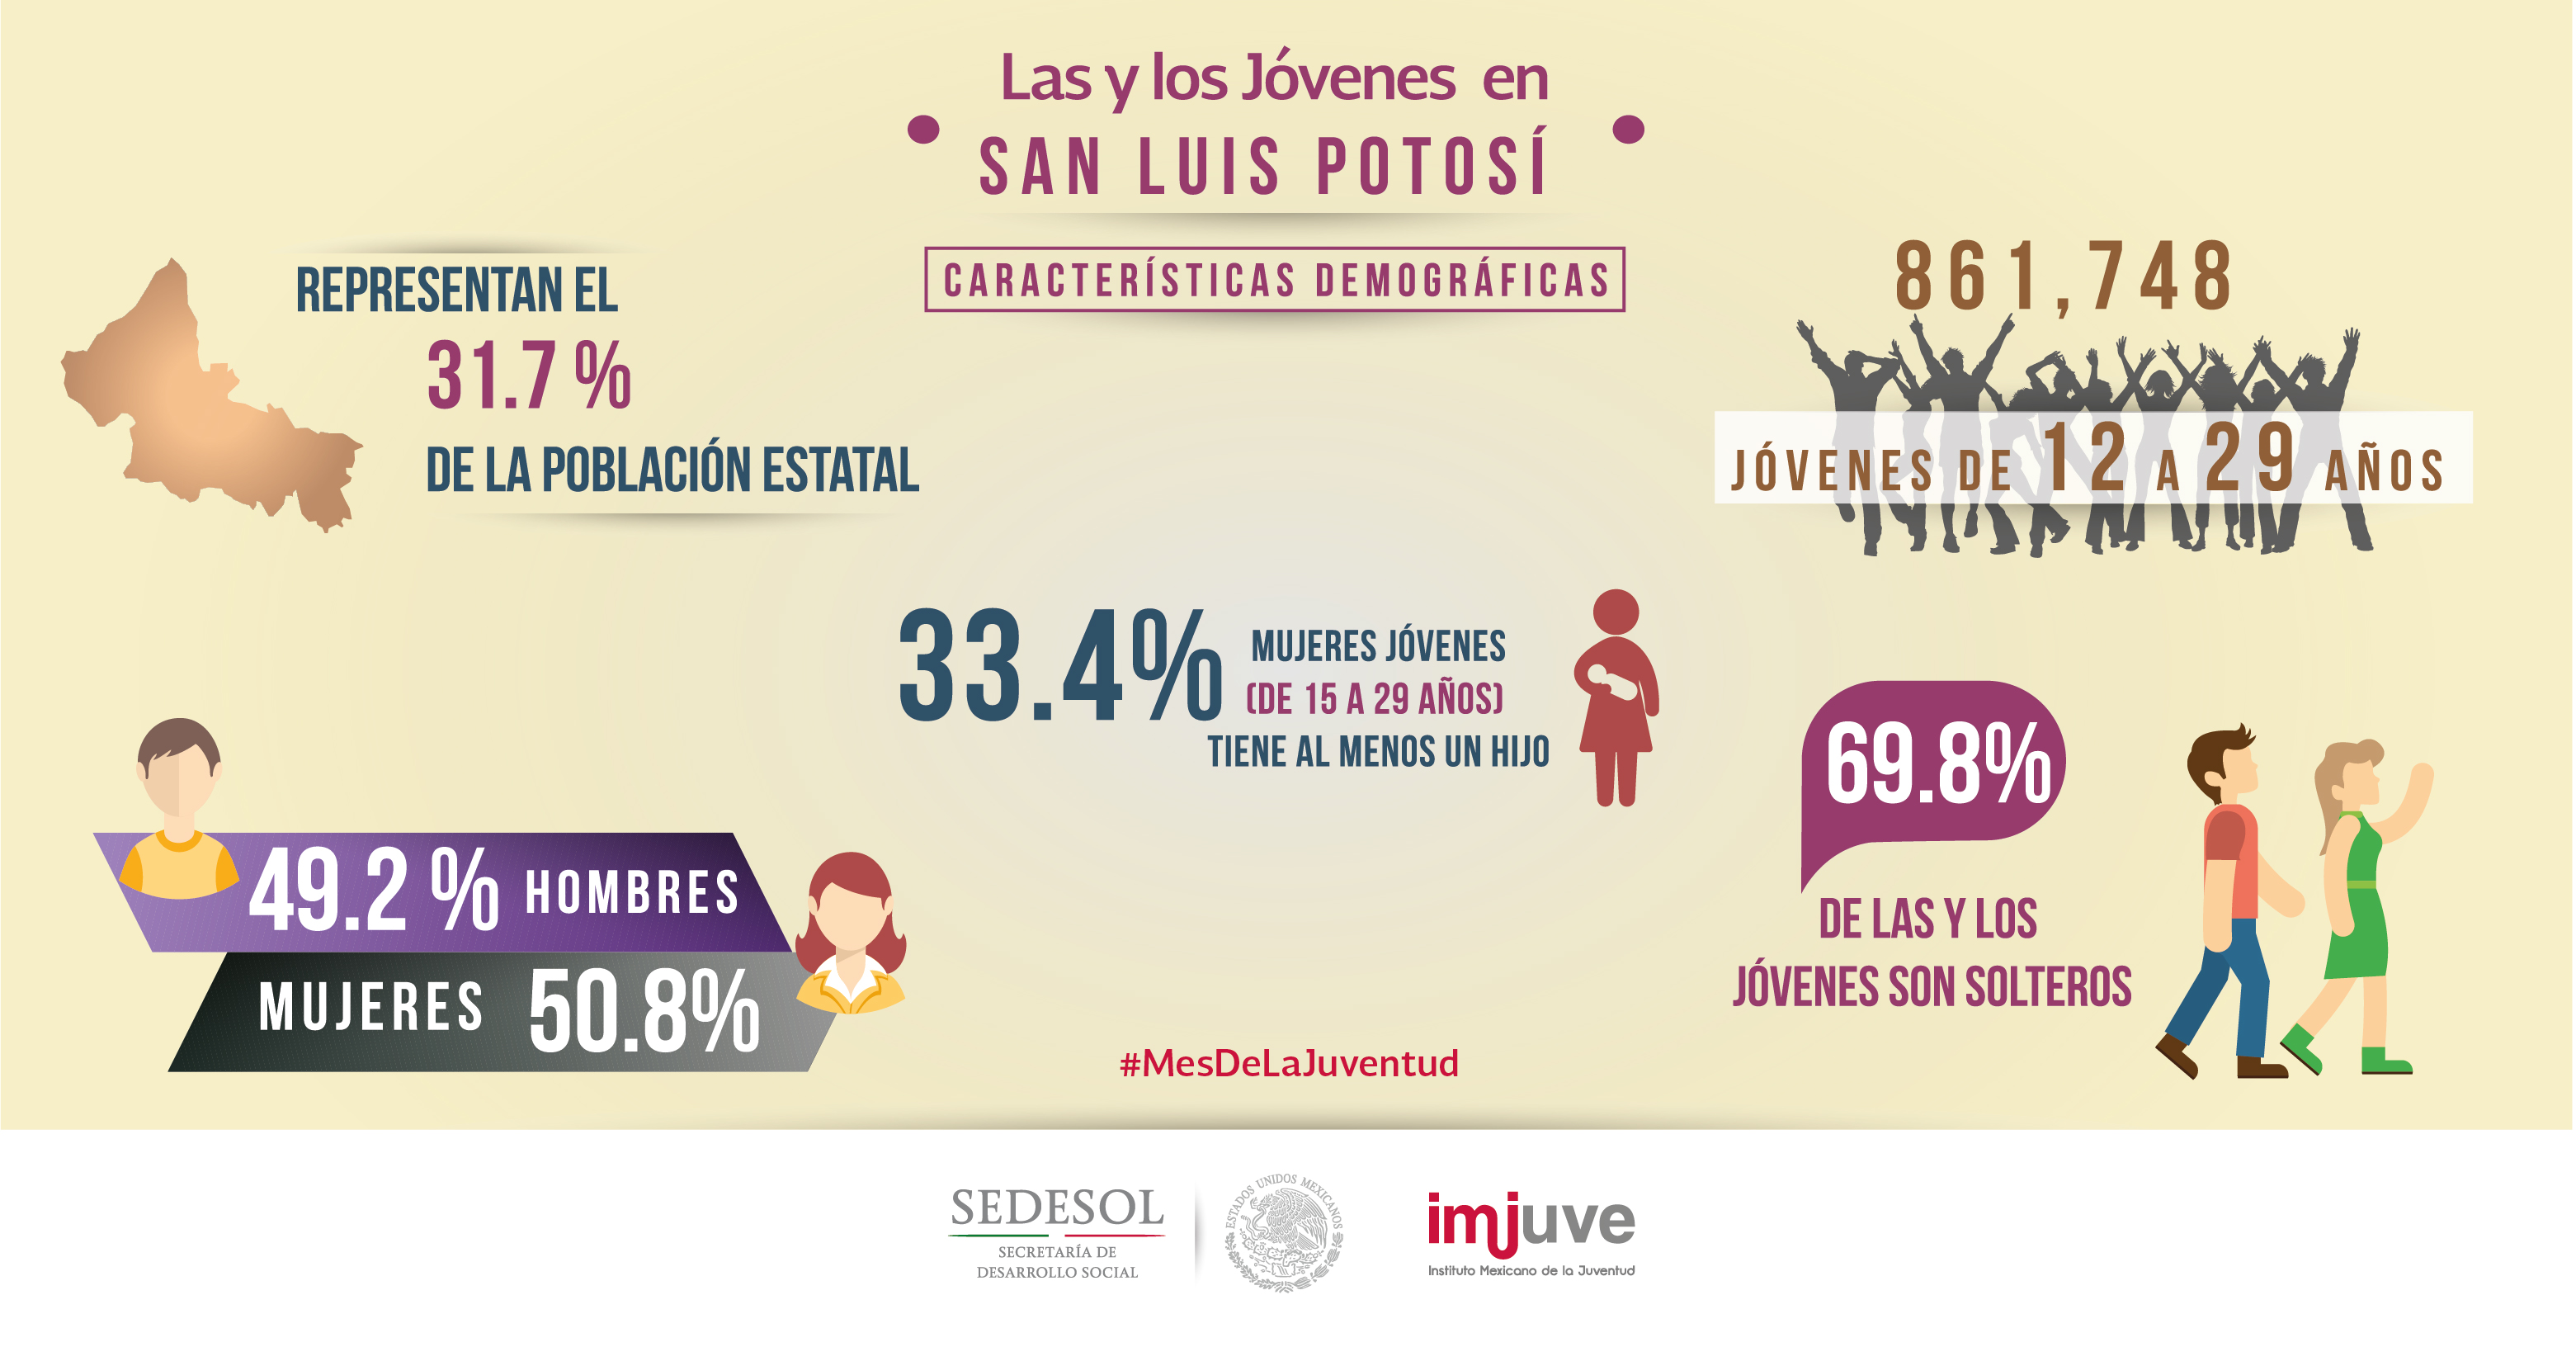 #SabíasQue en San Luis Potosí una de cada tres mujeres de 15 a 29 años tiene al menos un hijo.